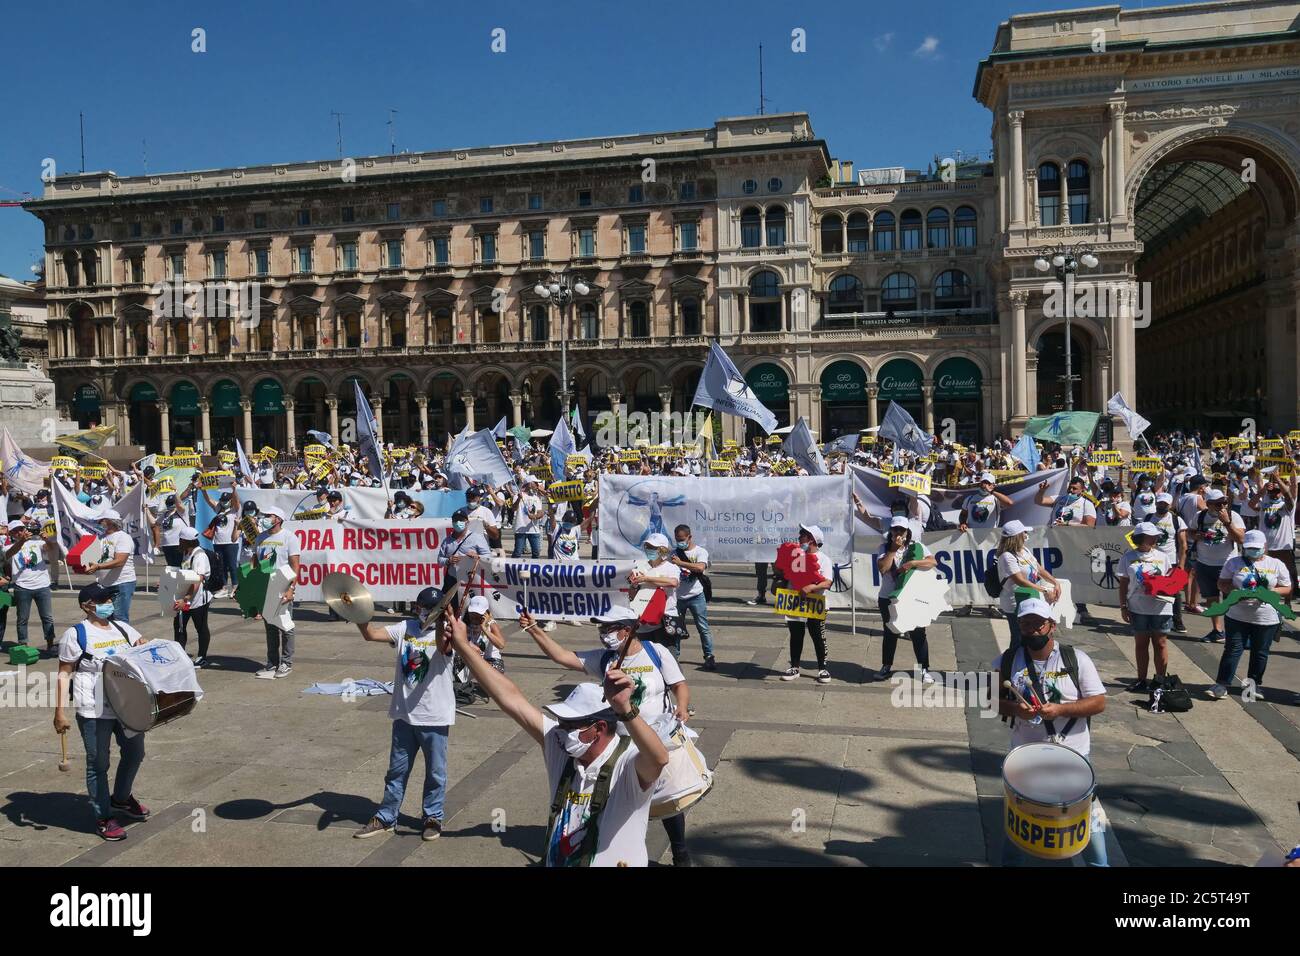 Cientos de banderas, camisetas, pancartas, carteles con la palabra "respeto" invadieron el centro con ocasión de la movilización nacional de enfermeras y salud Foto de stock